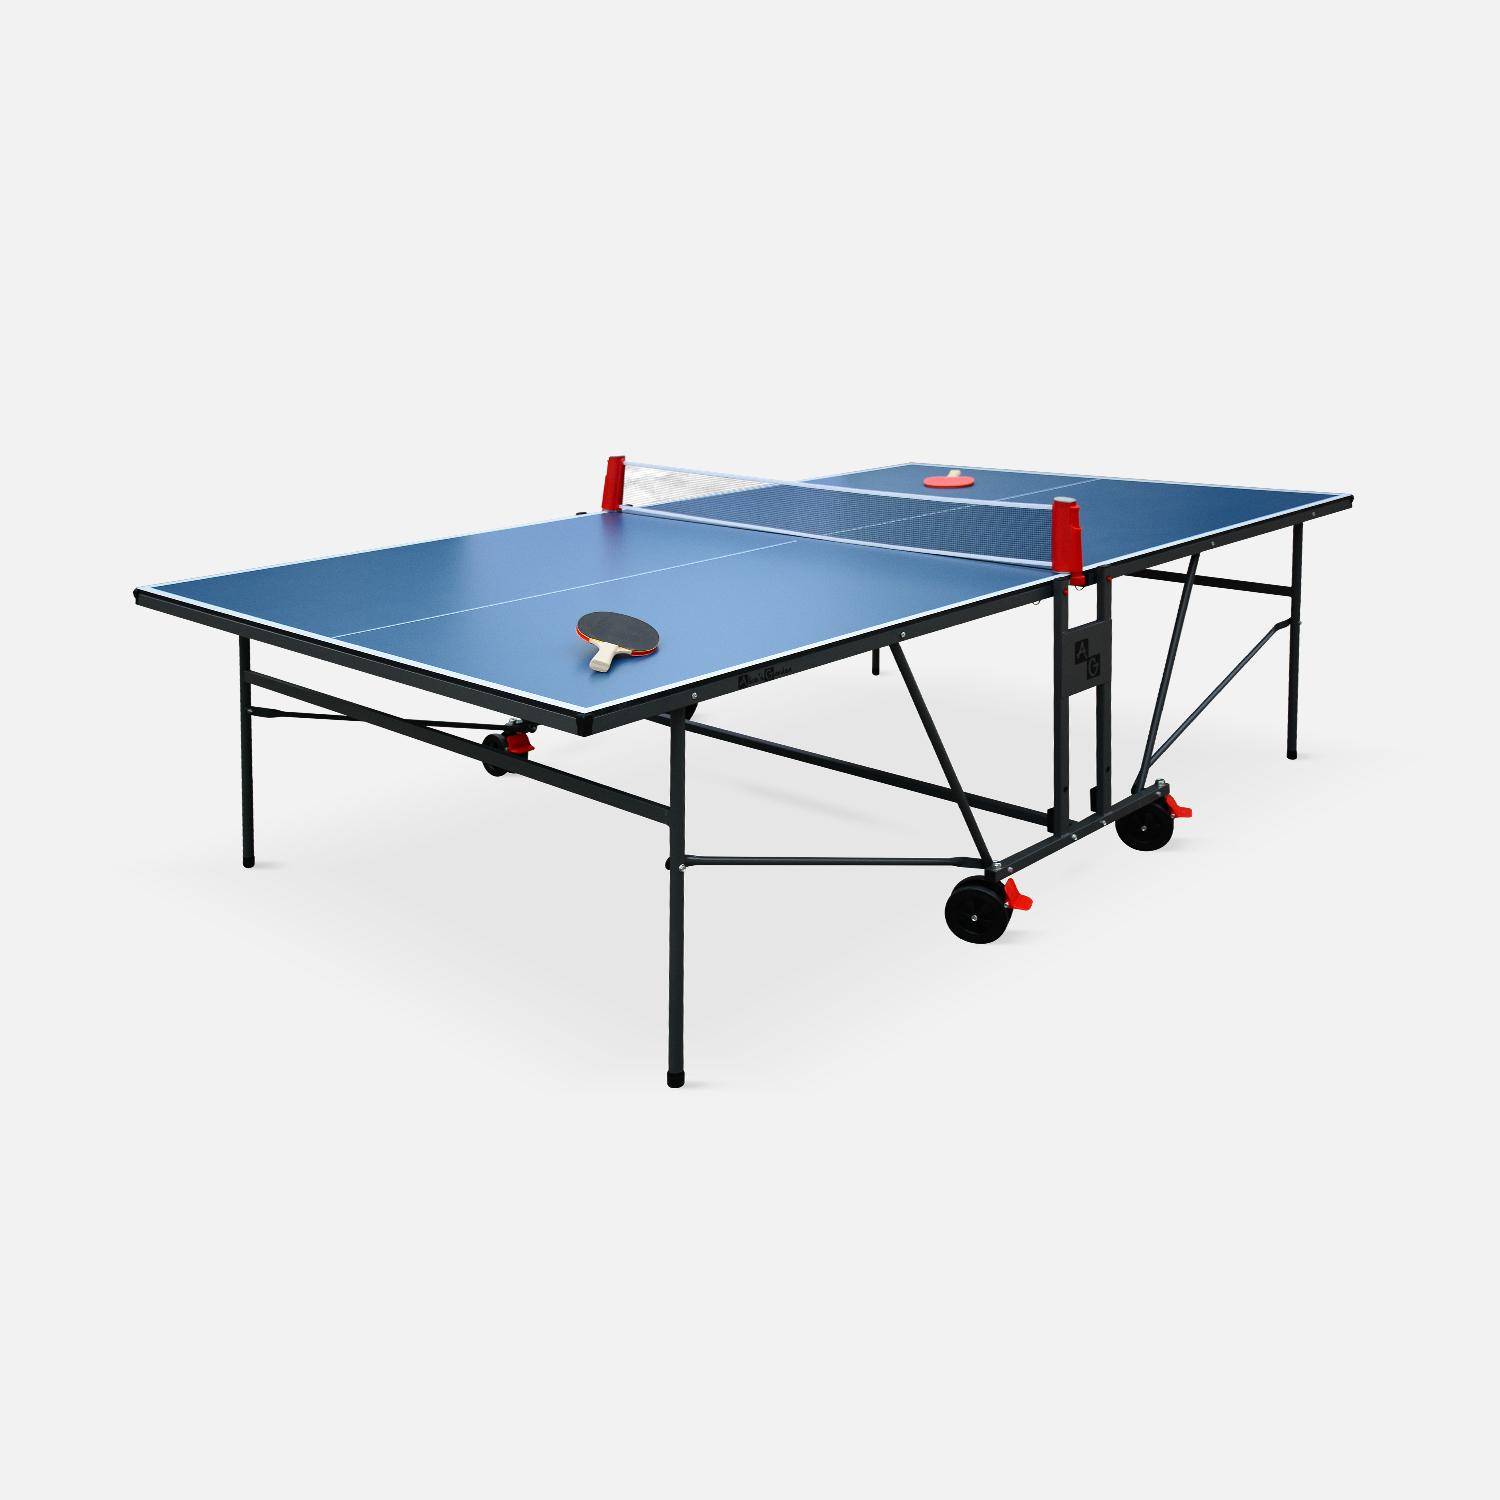 Table de ping pong INDOOR bleue - table pliable avec 2 raquettes et 3 balles, pour utilisation intérieure, sport tennis de table Photo1